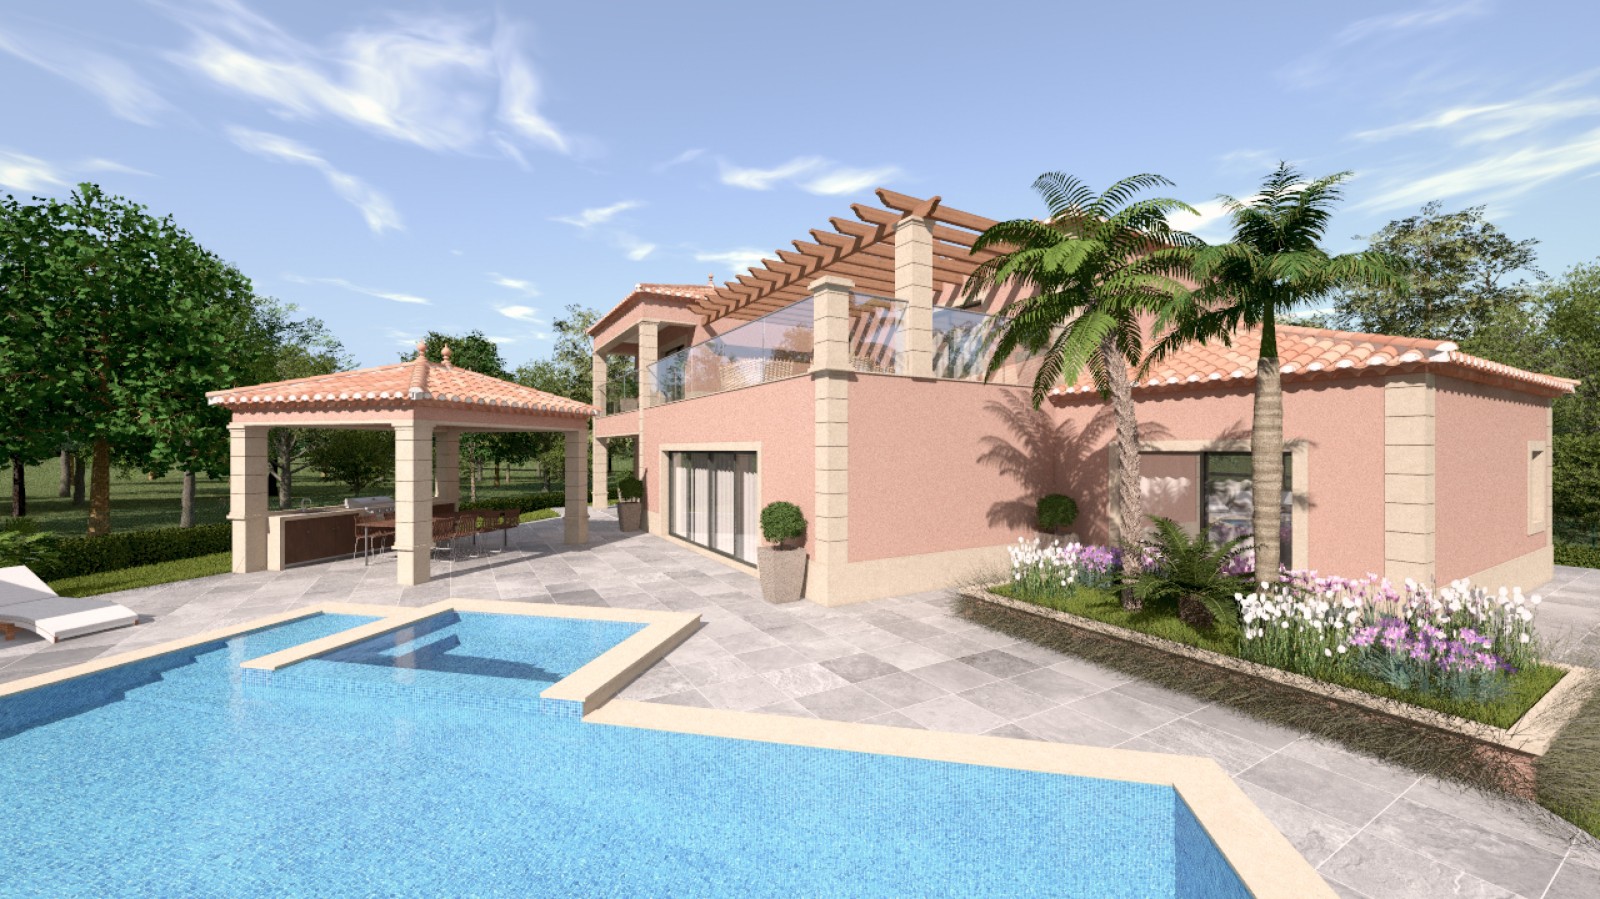 Moradia V4 com piscina, para venda em Portimão, Algarve_231708